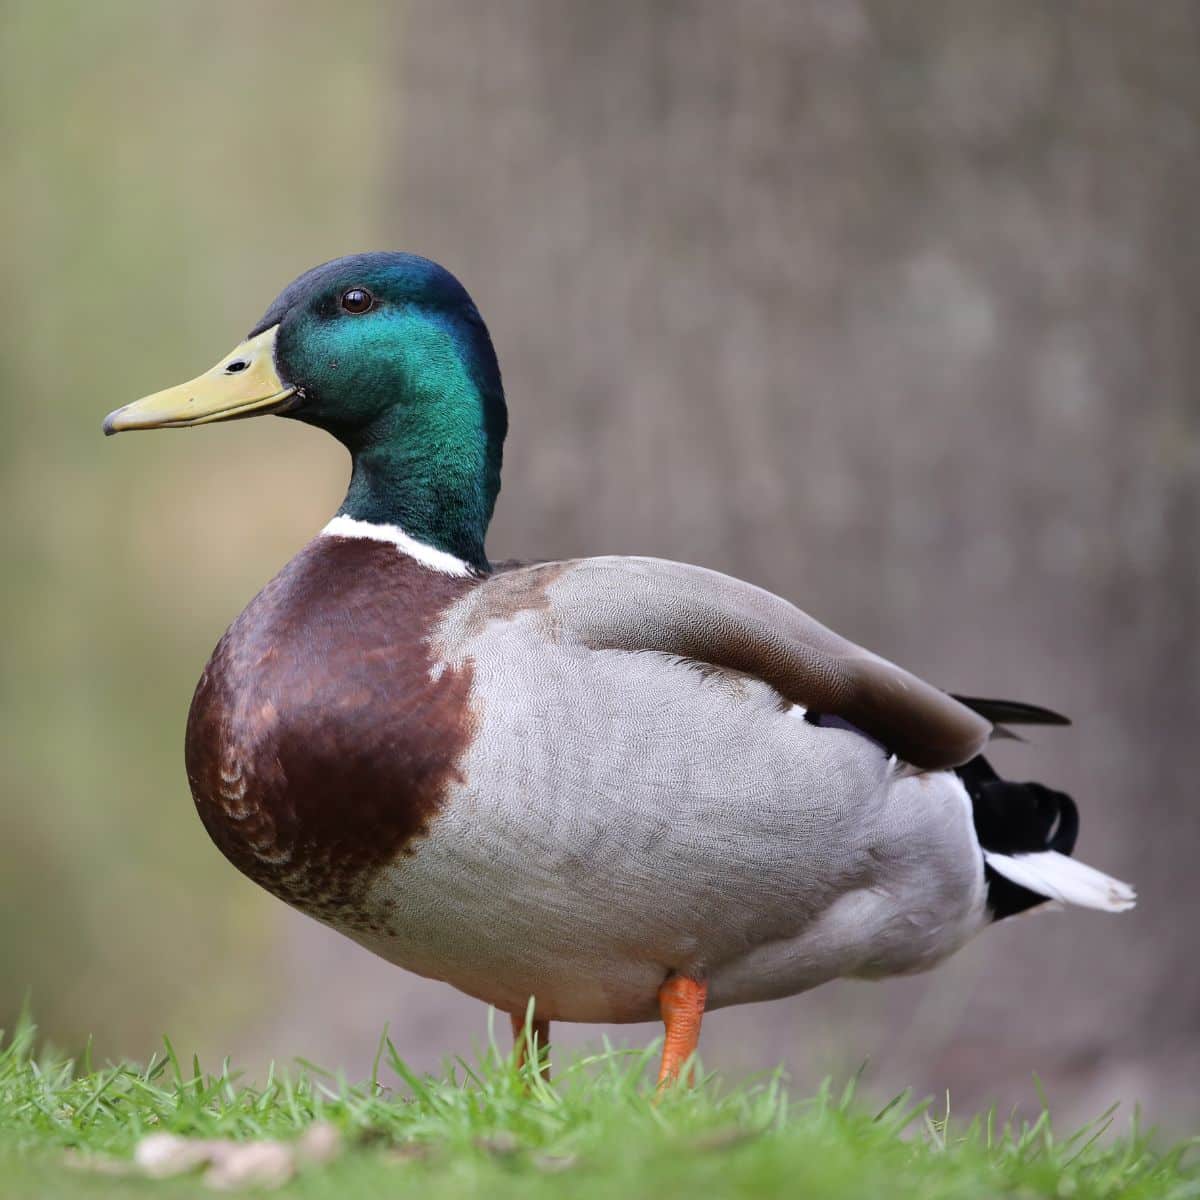 A beautiful Mallard duck in a backyard.